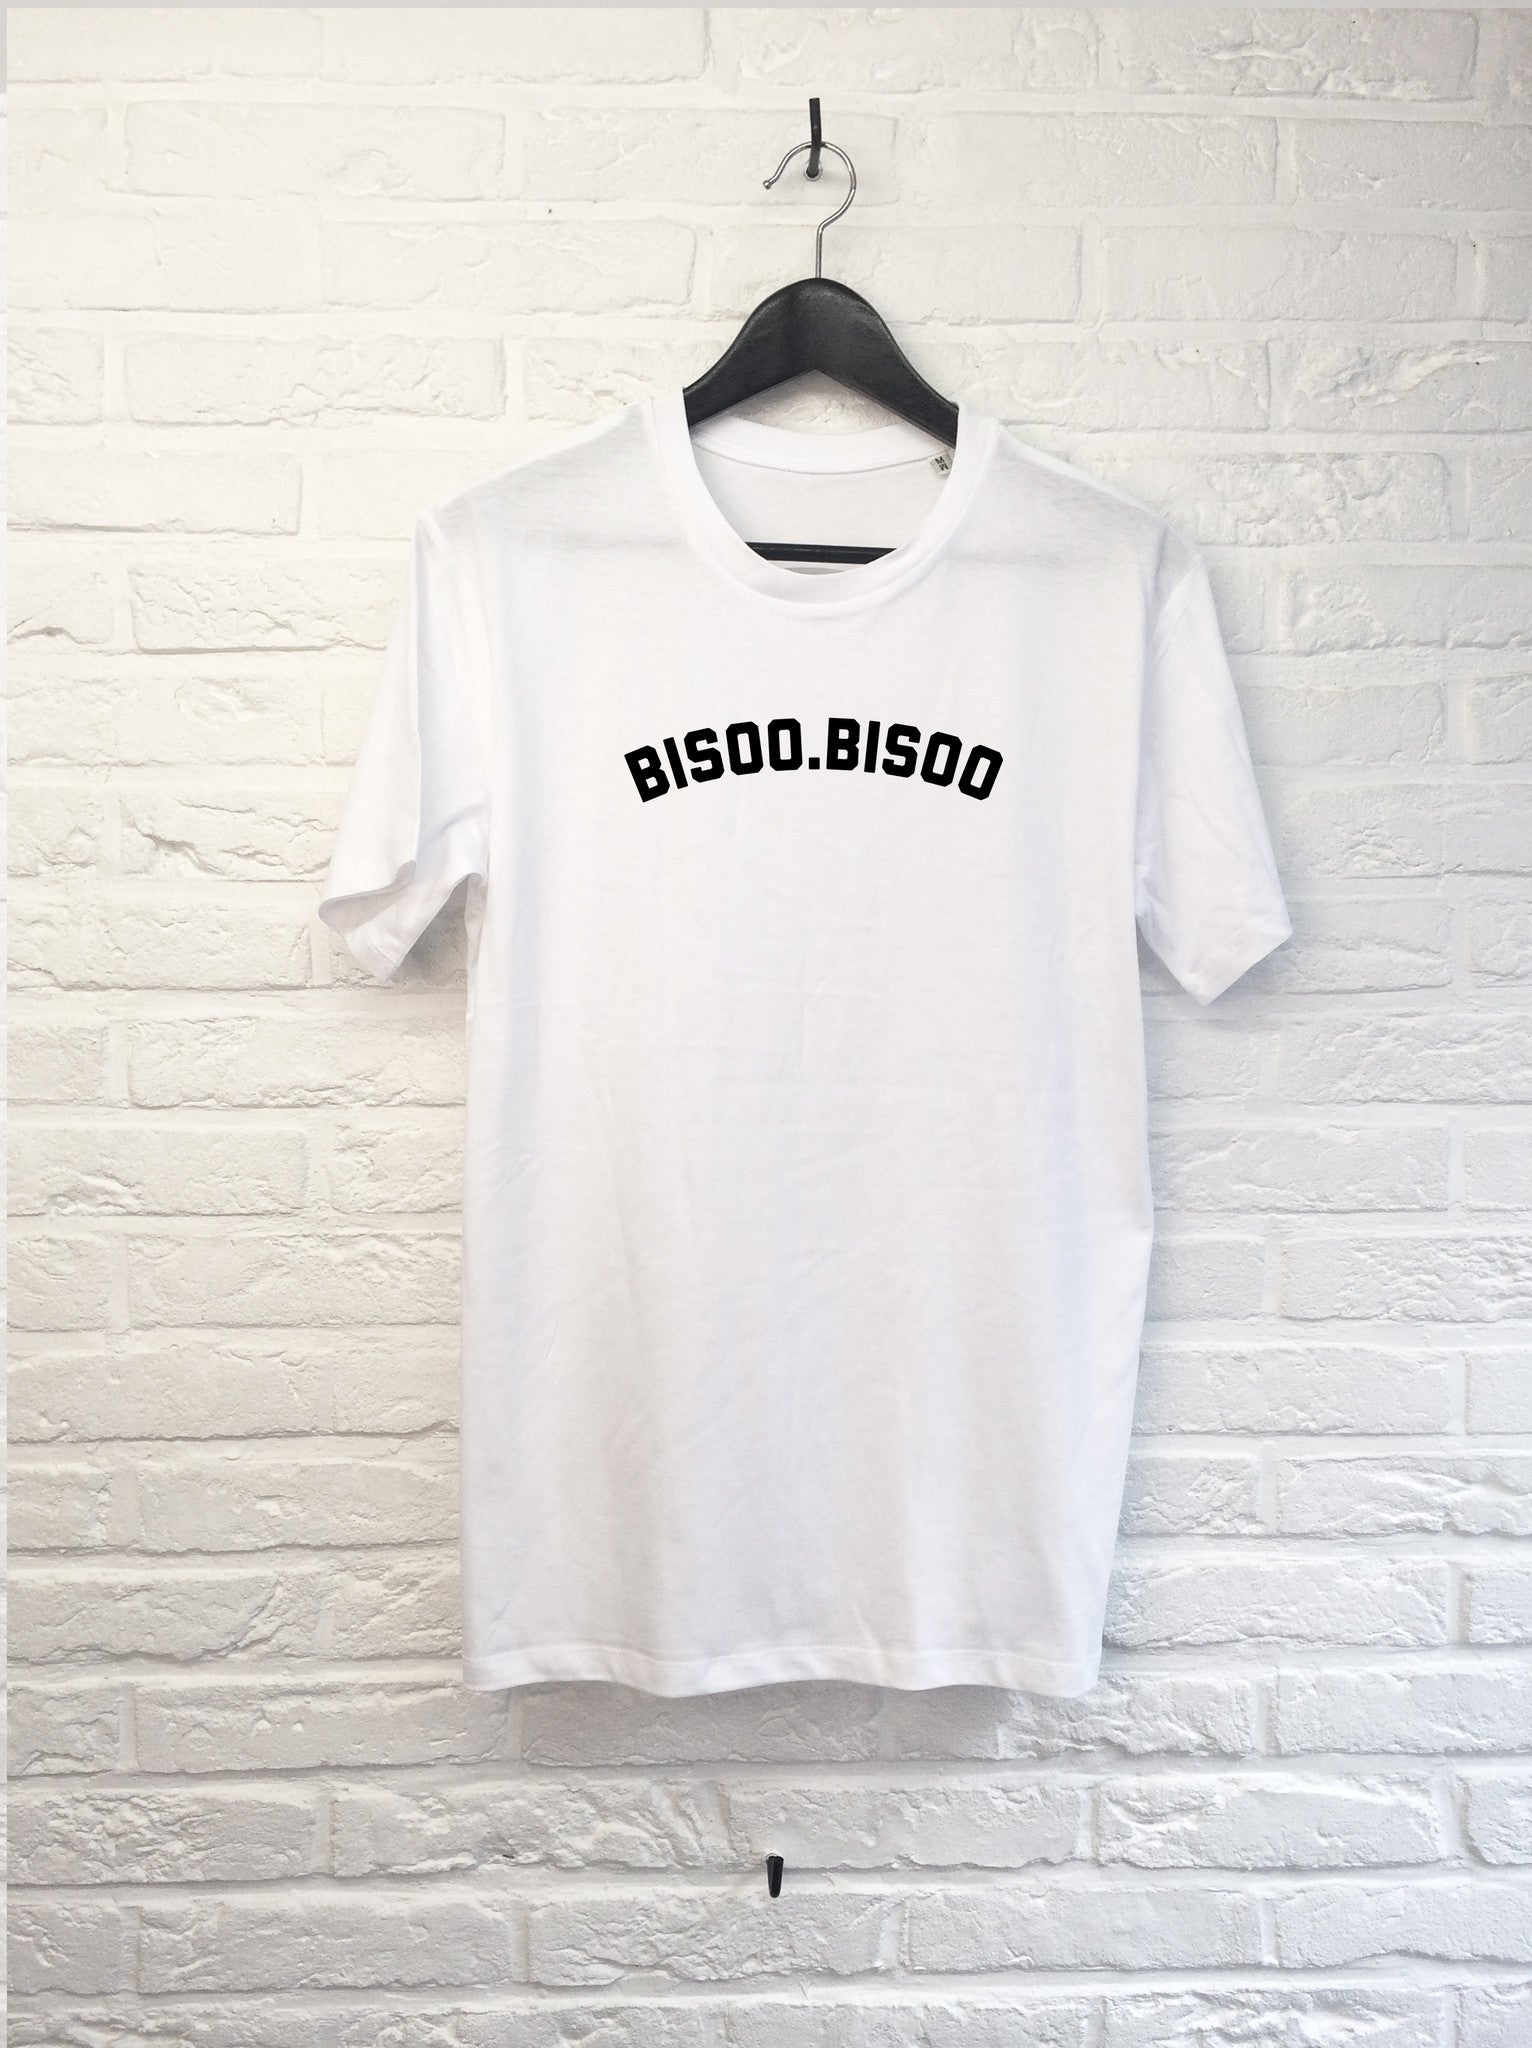 Bisoo Bisoo-T shirt-Atelier Amelot